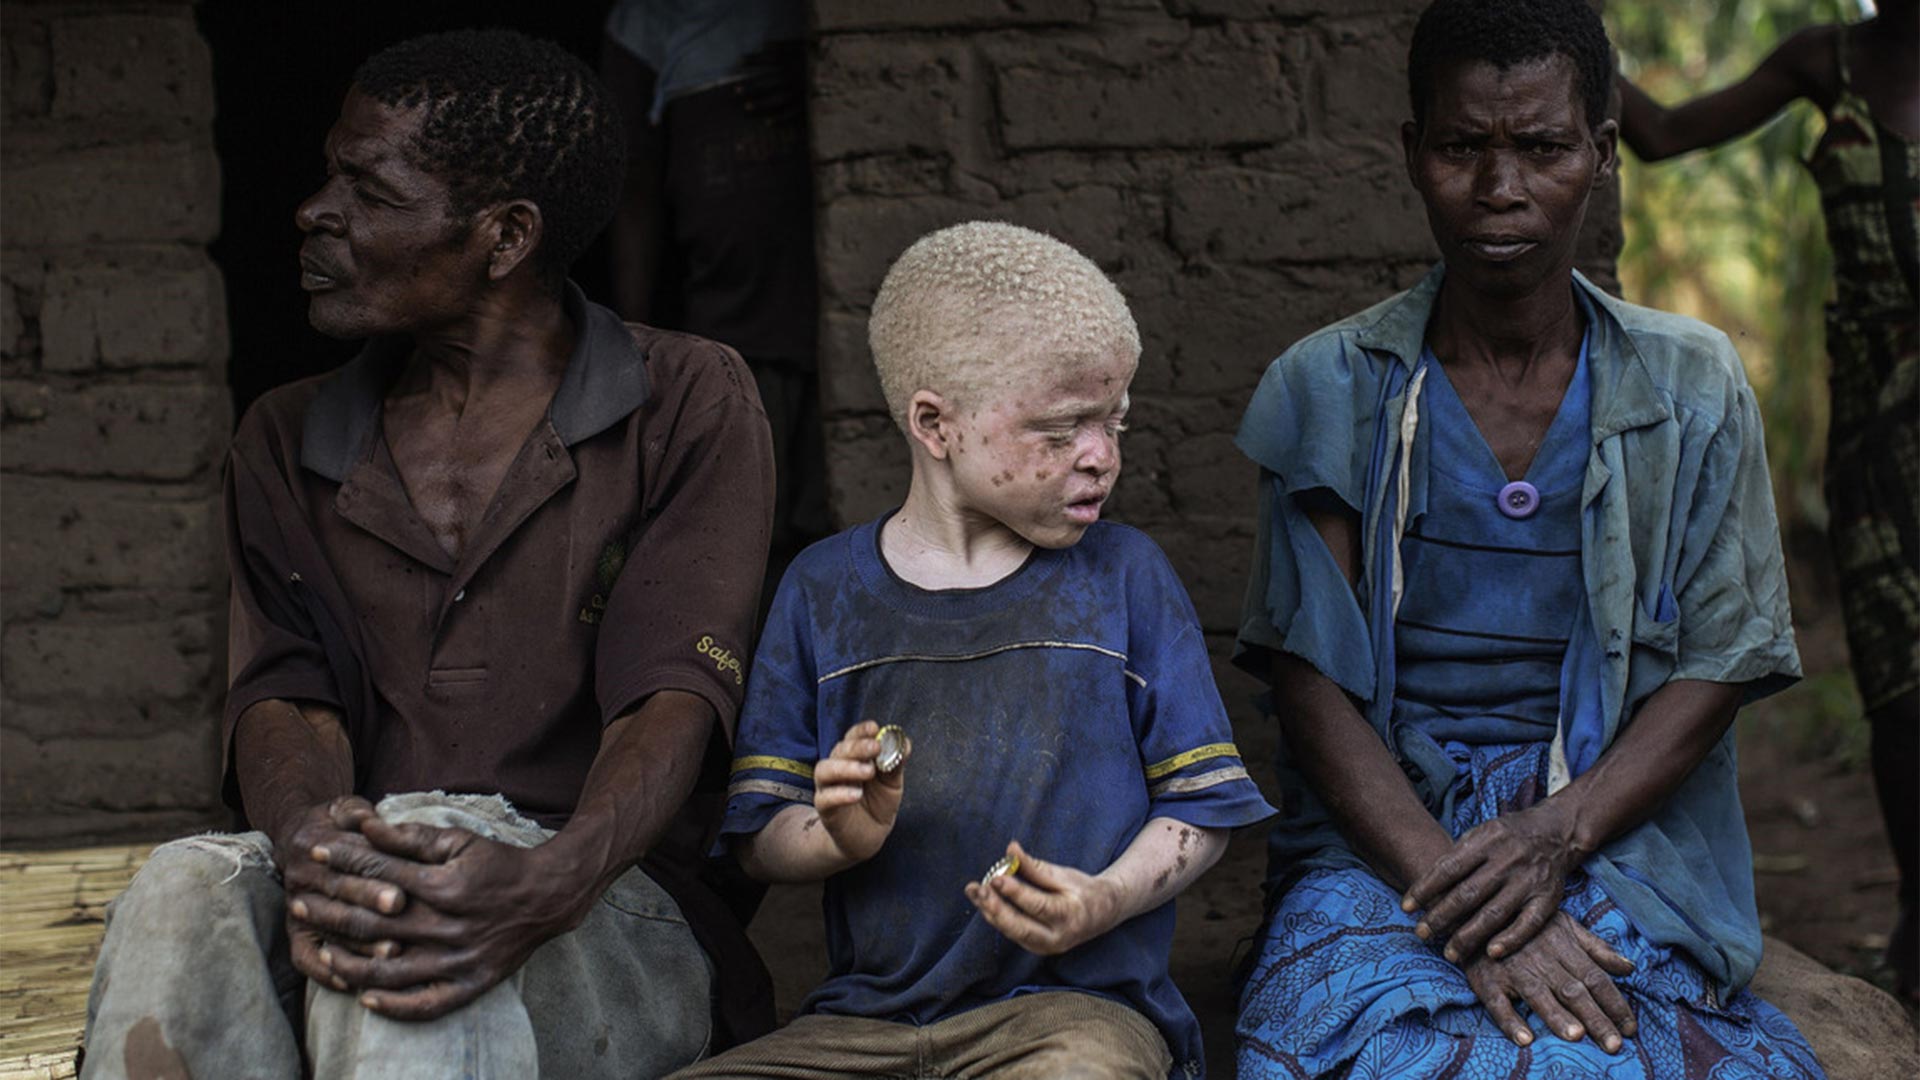 Las tradiciones mágicas y las brujerías terminó por difundir la idea de que un trozo de un albino podría garantizar a otros suerte, riqueza y buena fortuna. Así empezó la persecución, el secuestro, la mutilación y el homicidio de estas víctimas indefensas (AFP)